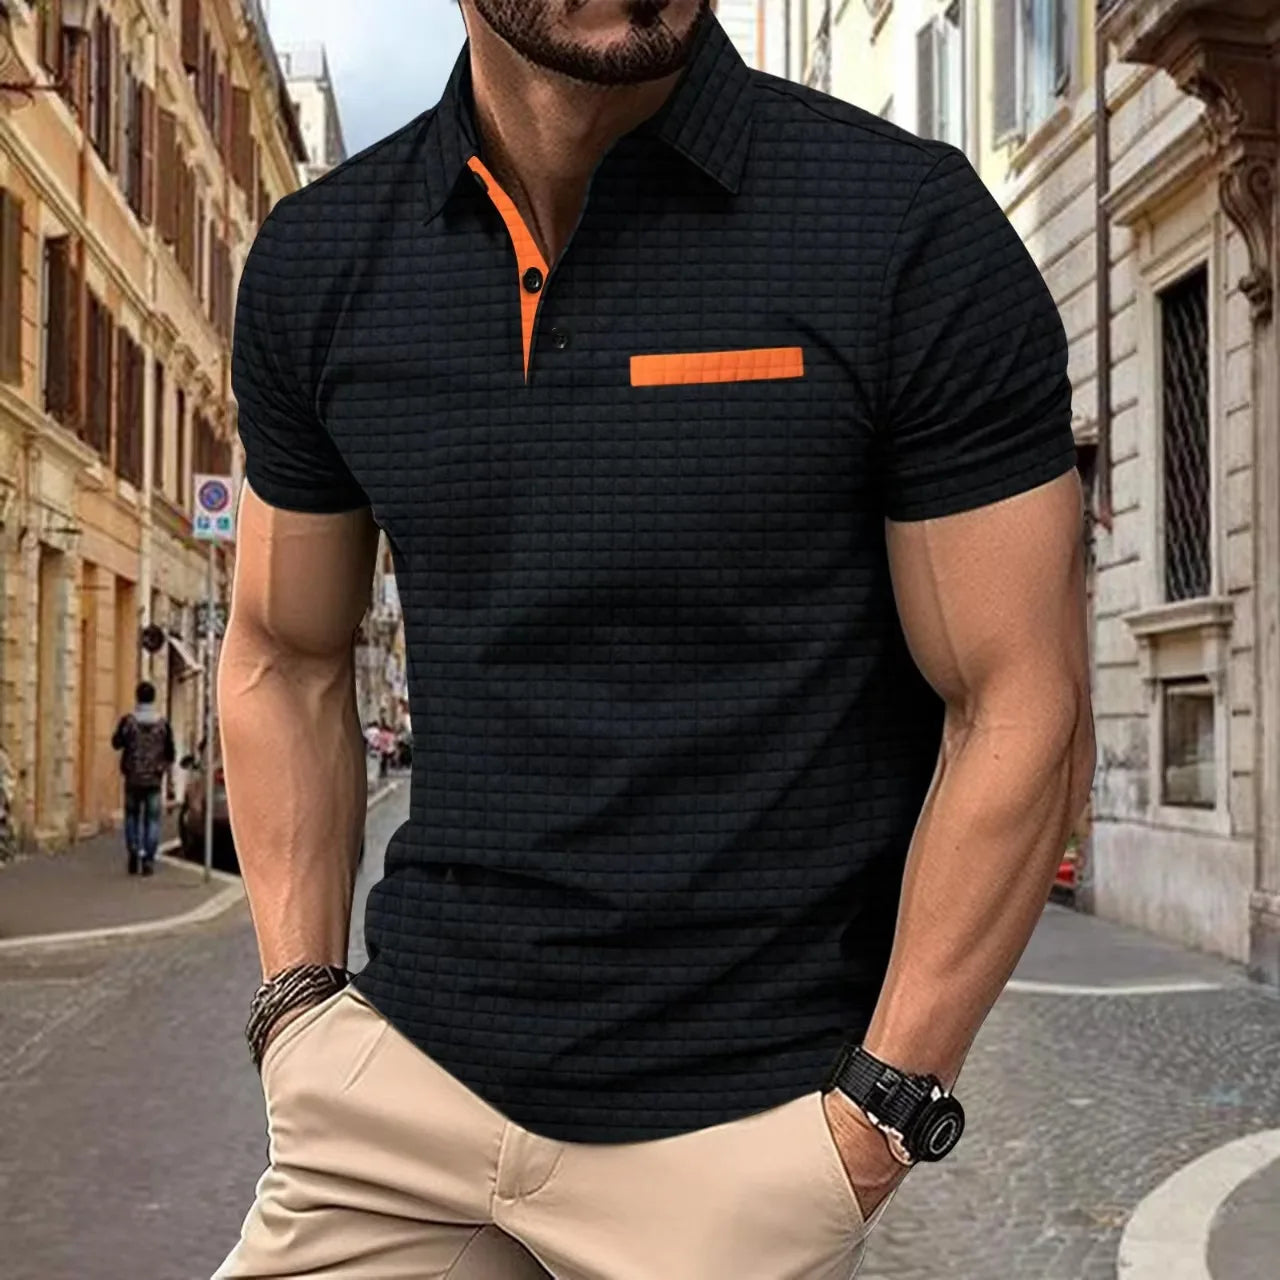 Men's POLO Shirt lapel Jacquard plaid button-up